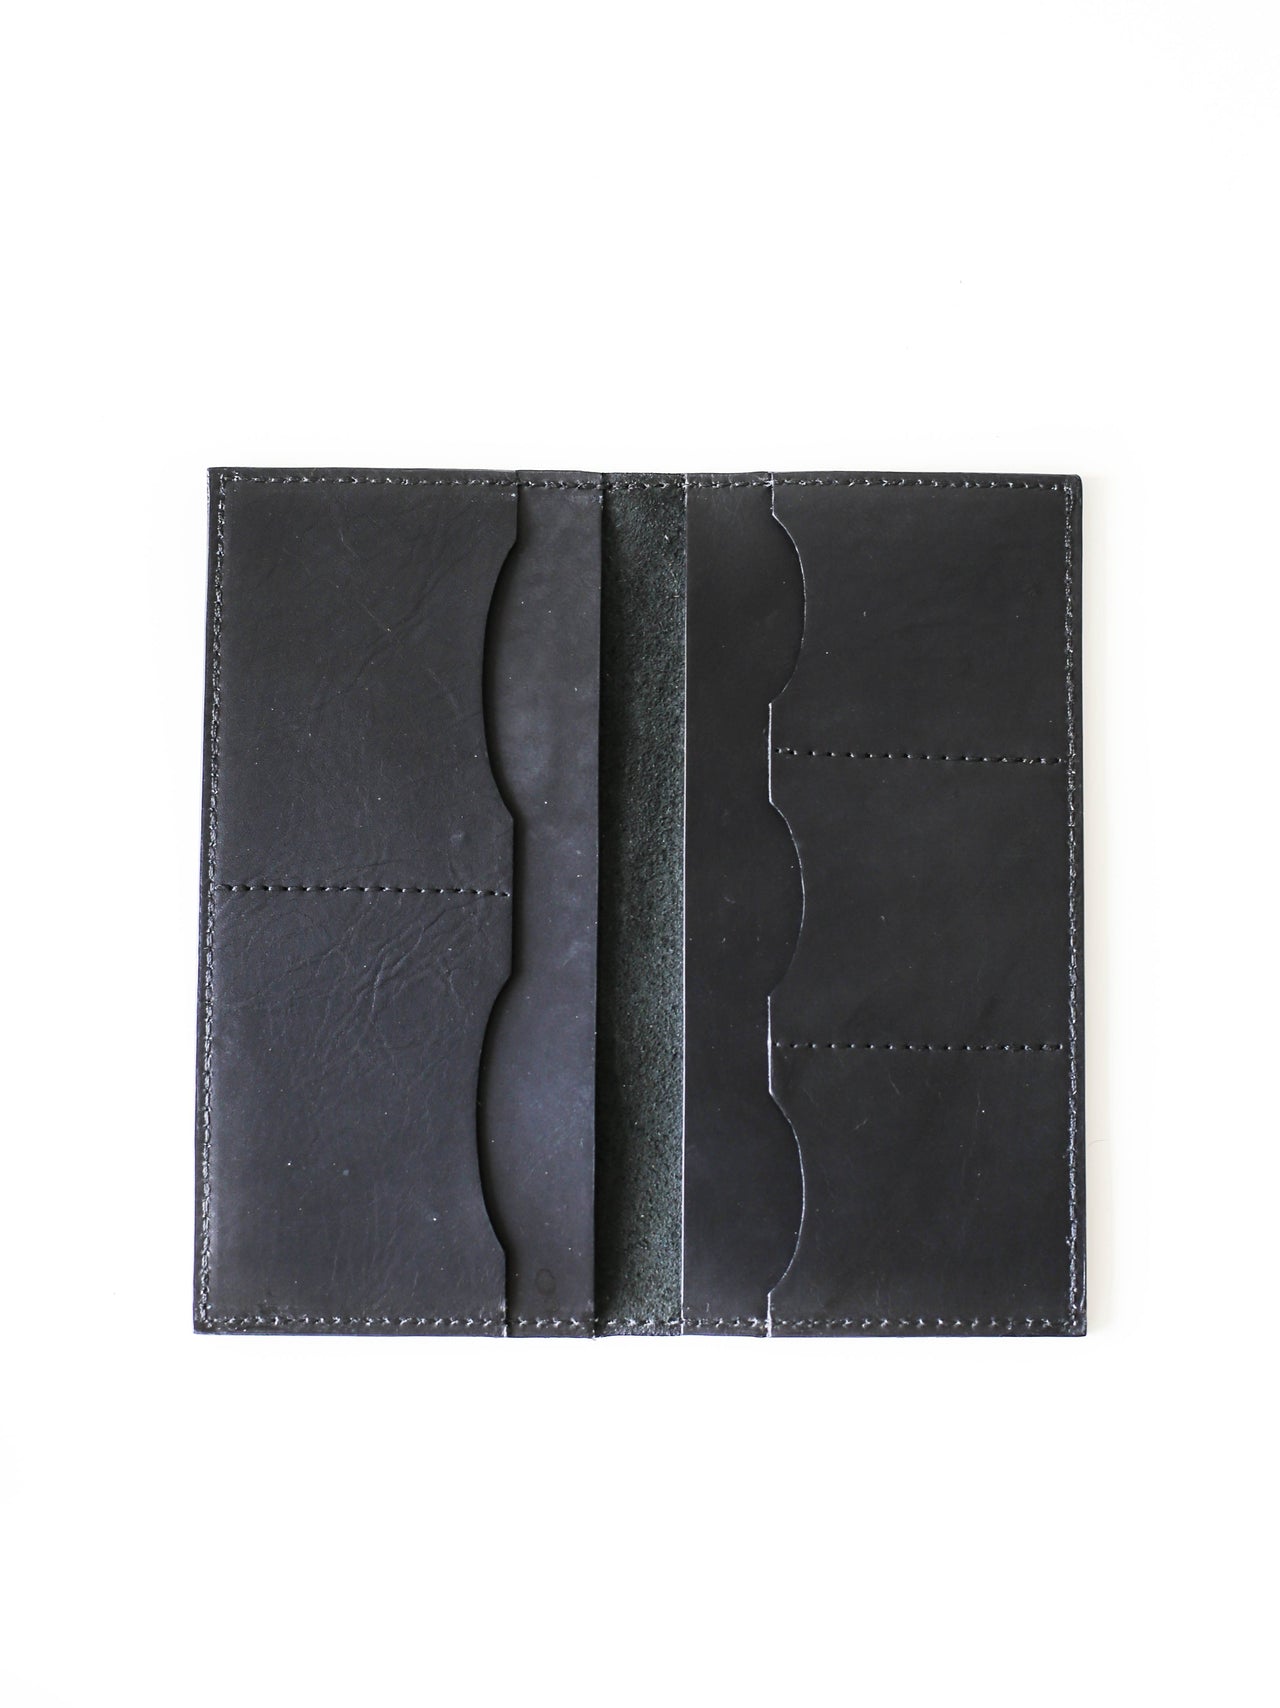 Black Long Leather wallet design for Men